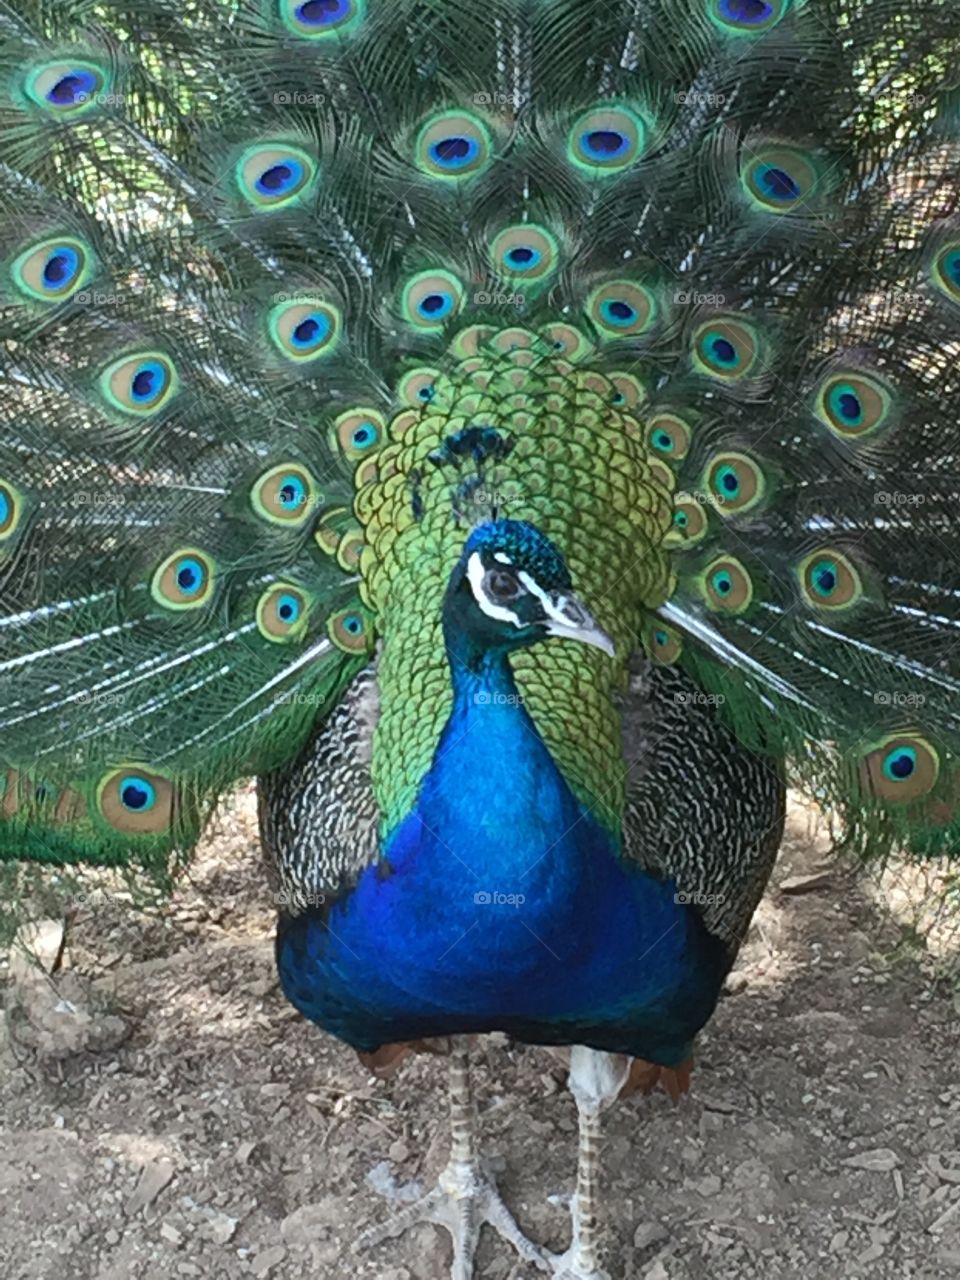 Peacock displaying Tail